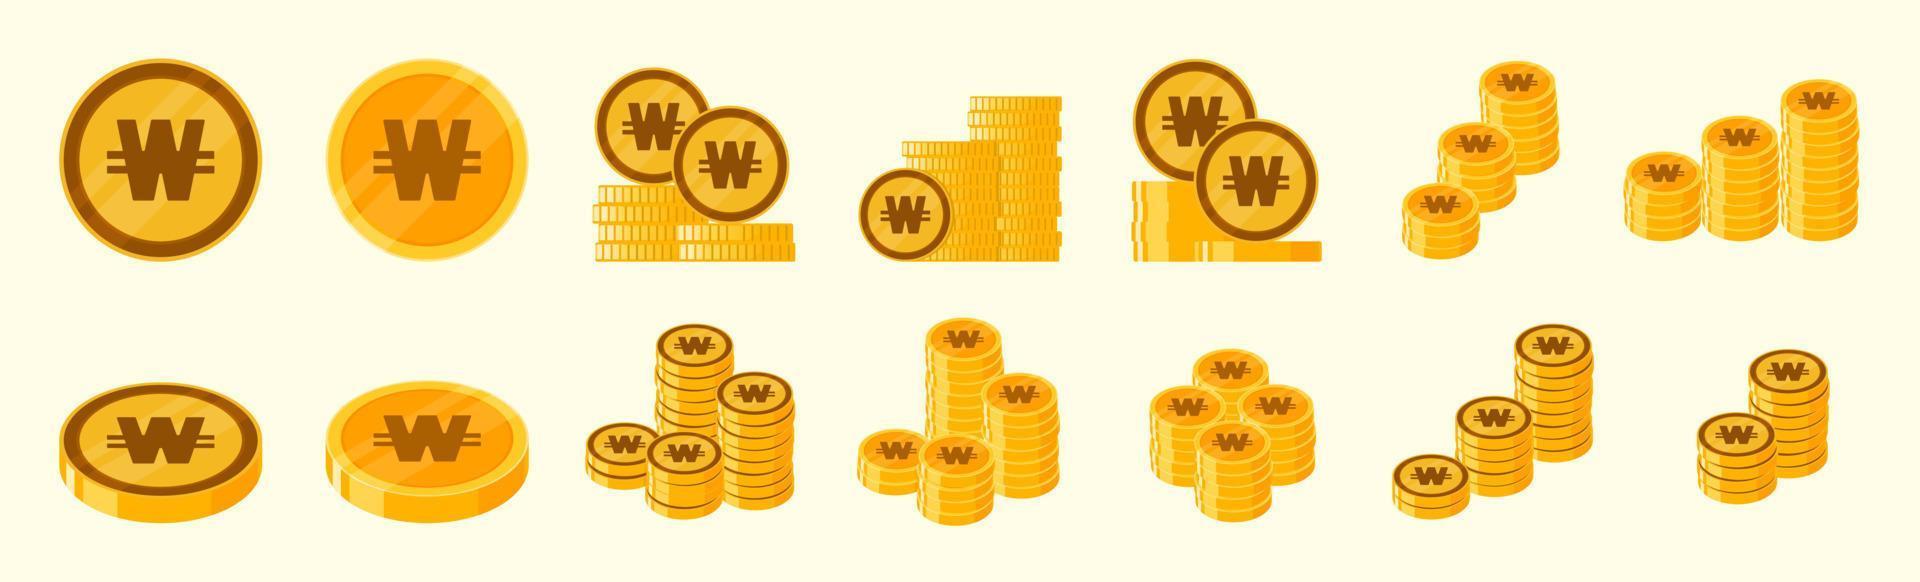 Korean Won Coin Icon Set vector